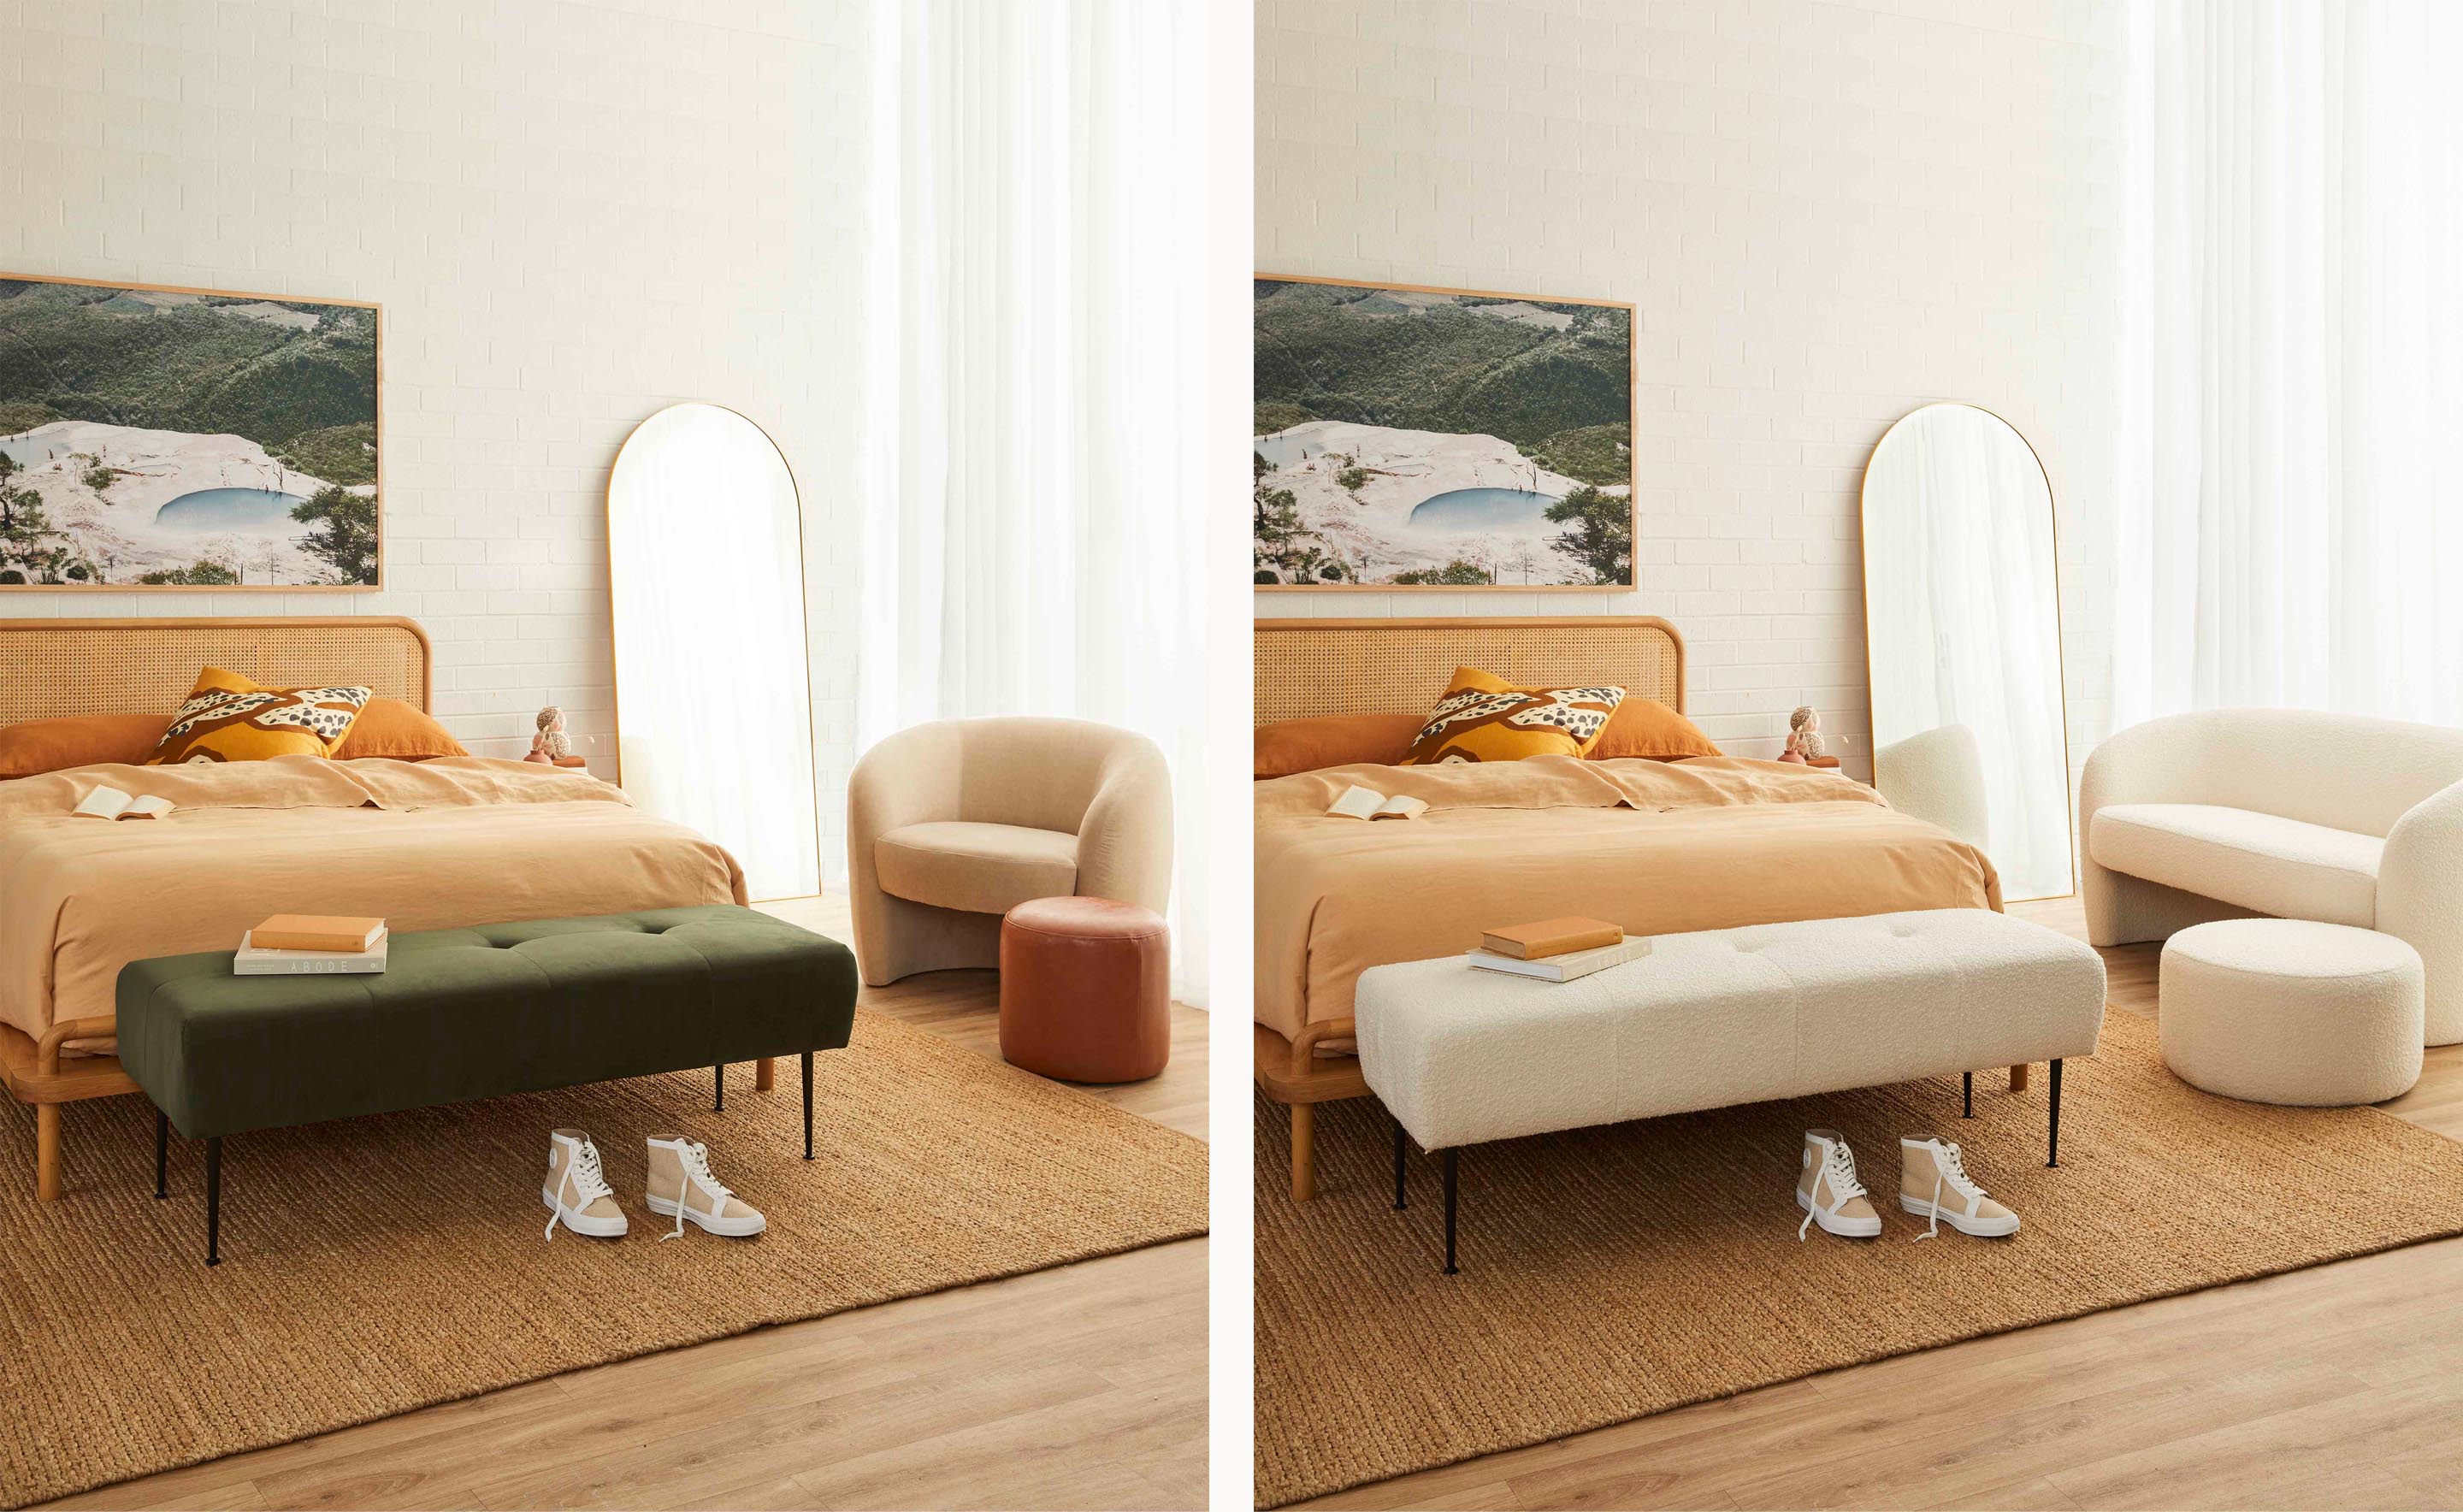 Shop our range of bedroom furniture in Sydney, Melbourne and online.